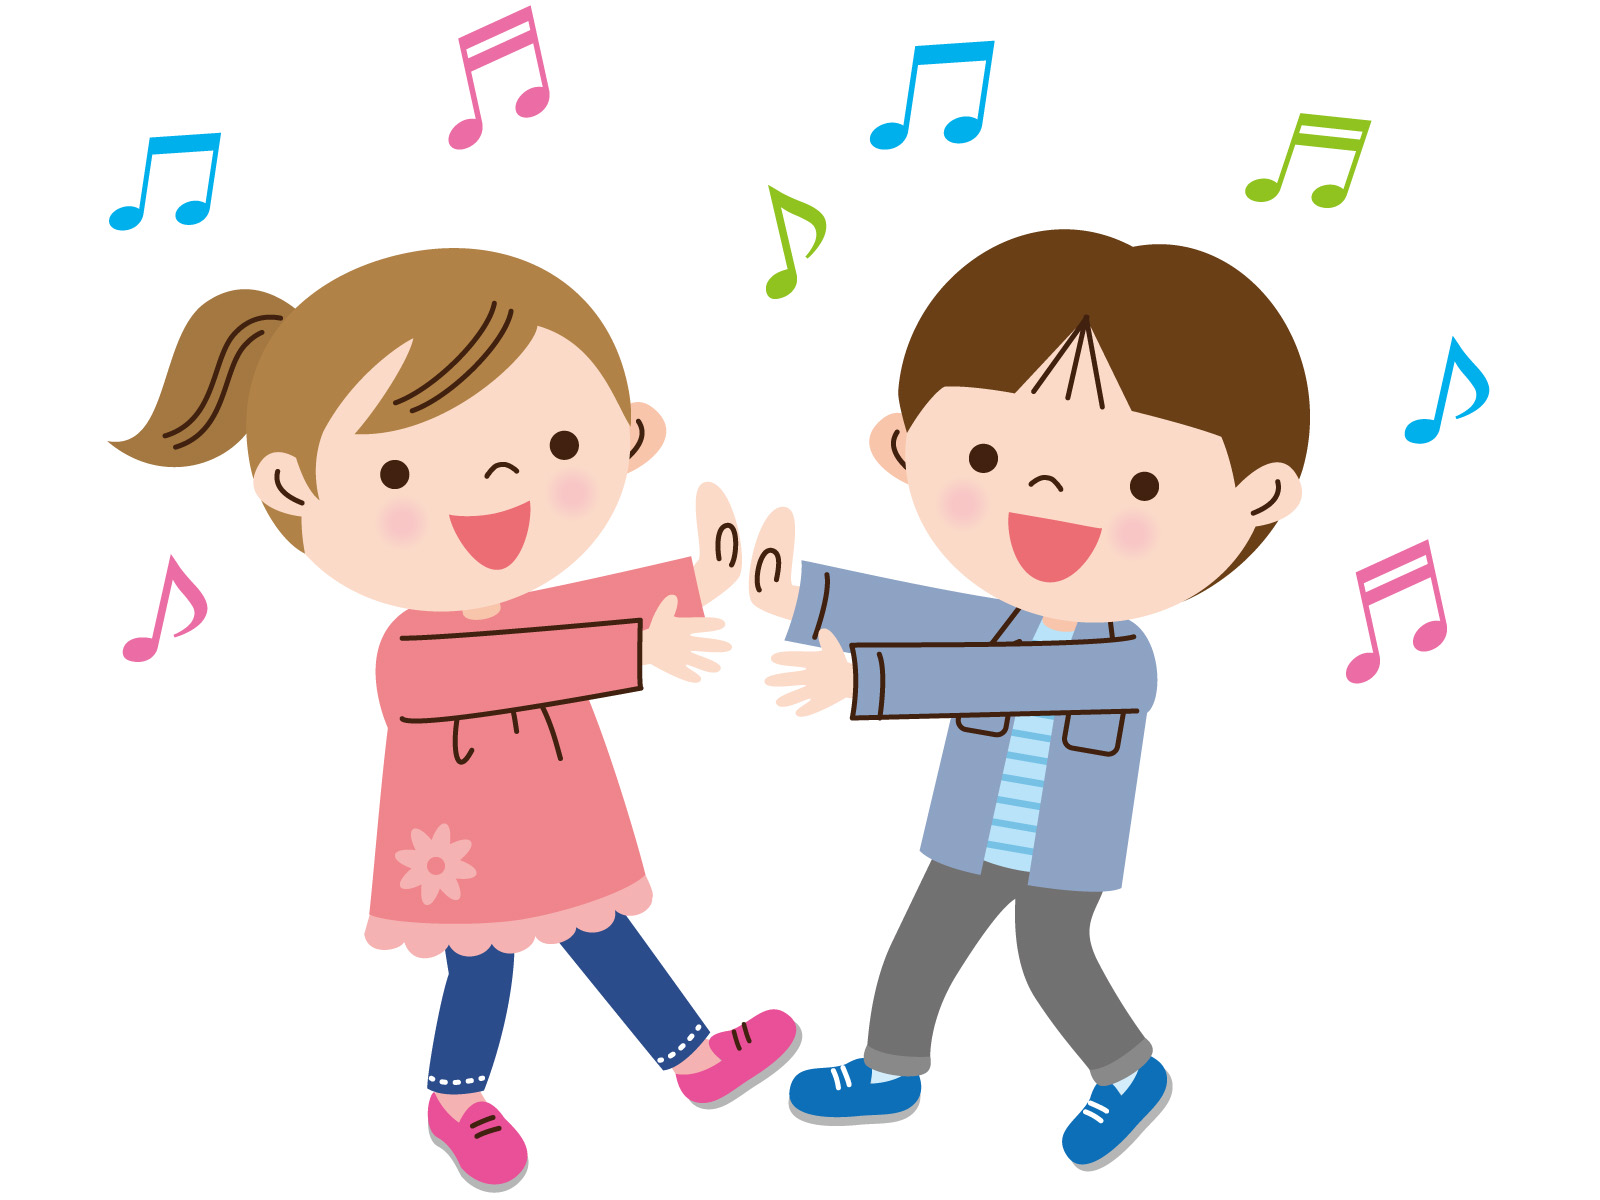 《4月20日》家族で歌って踊ってレクリエーション♪草津市のエイスクエアで「ハッピーミュージックタイム♪」が開催！